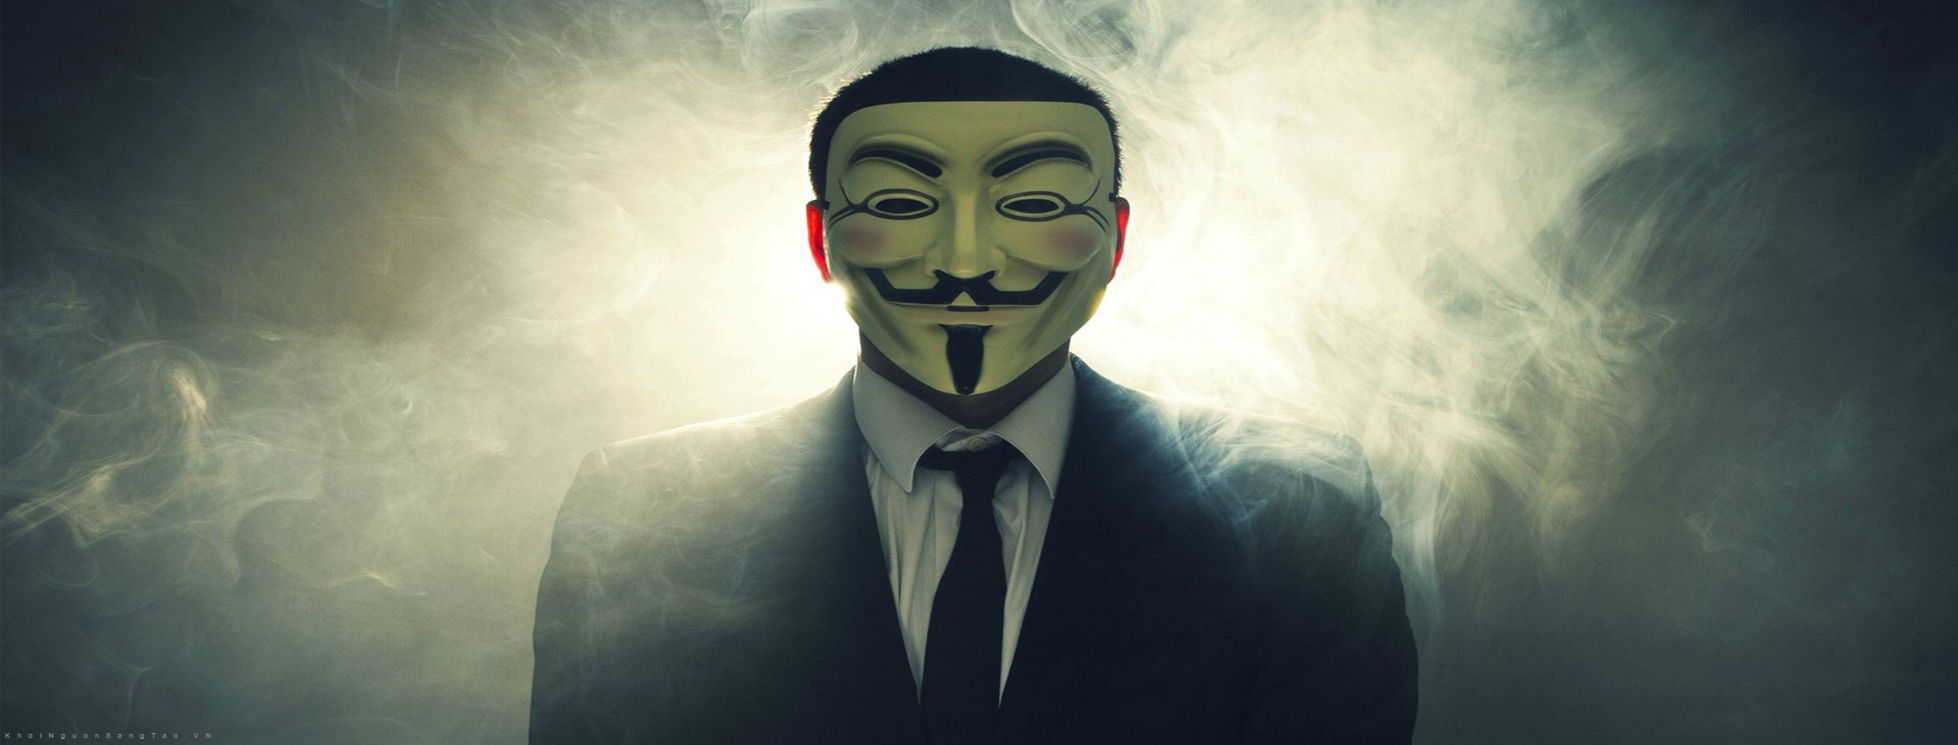 Hình ảnh hacker Anonymous ngầu chất bí ẩn ấn tượng nhất   thptchuvananhanoieduvn